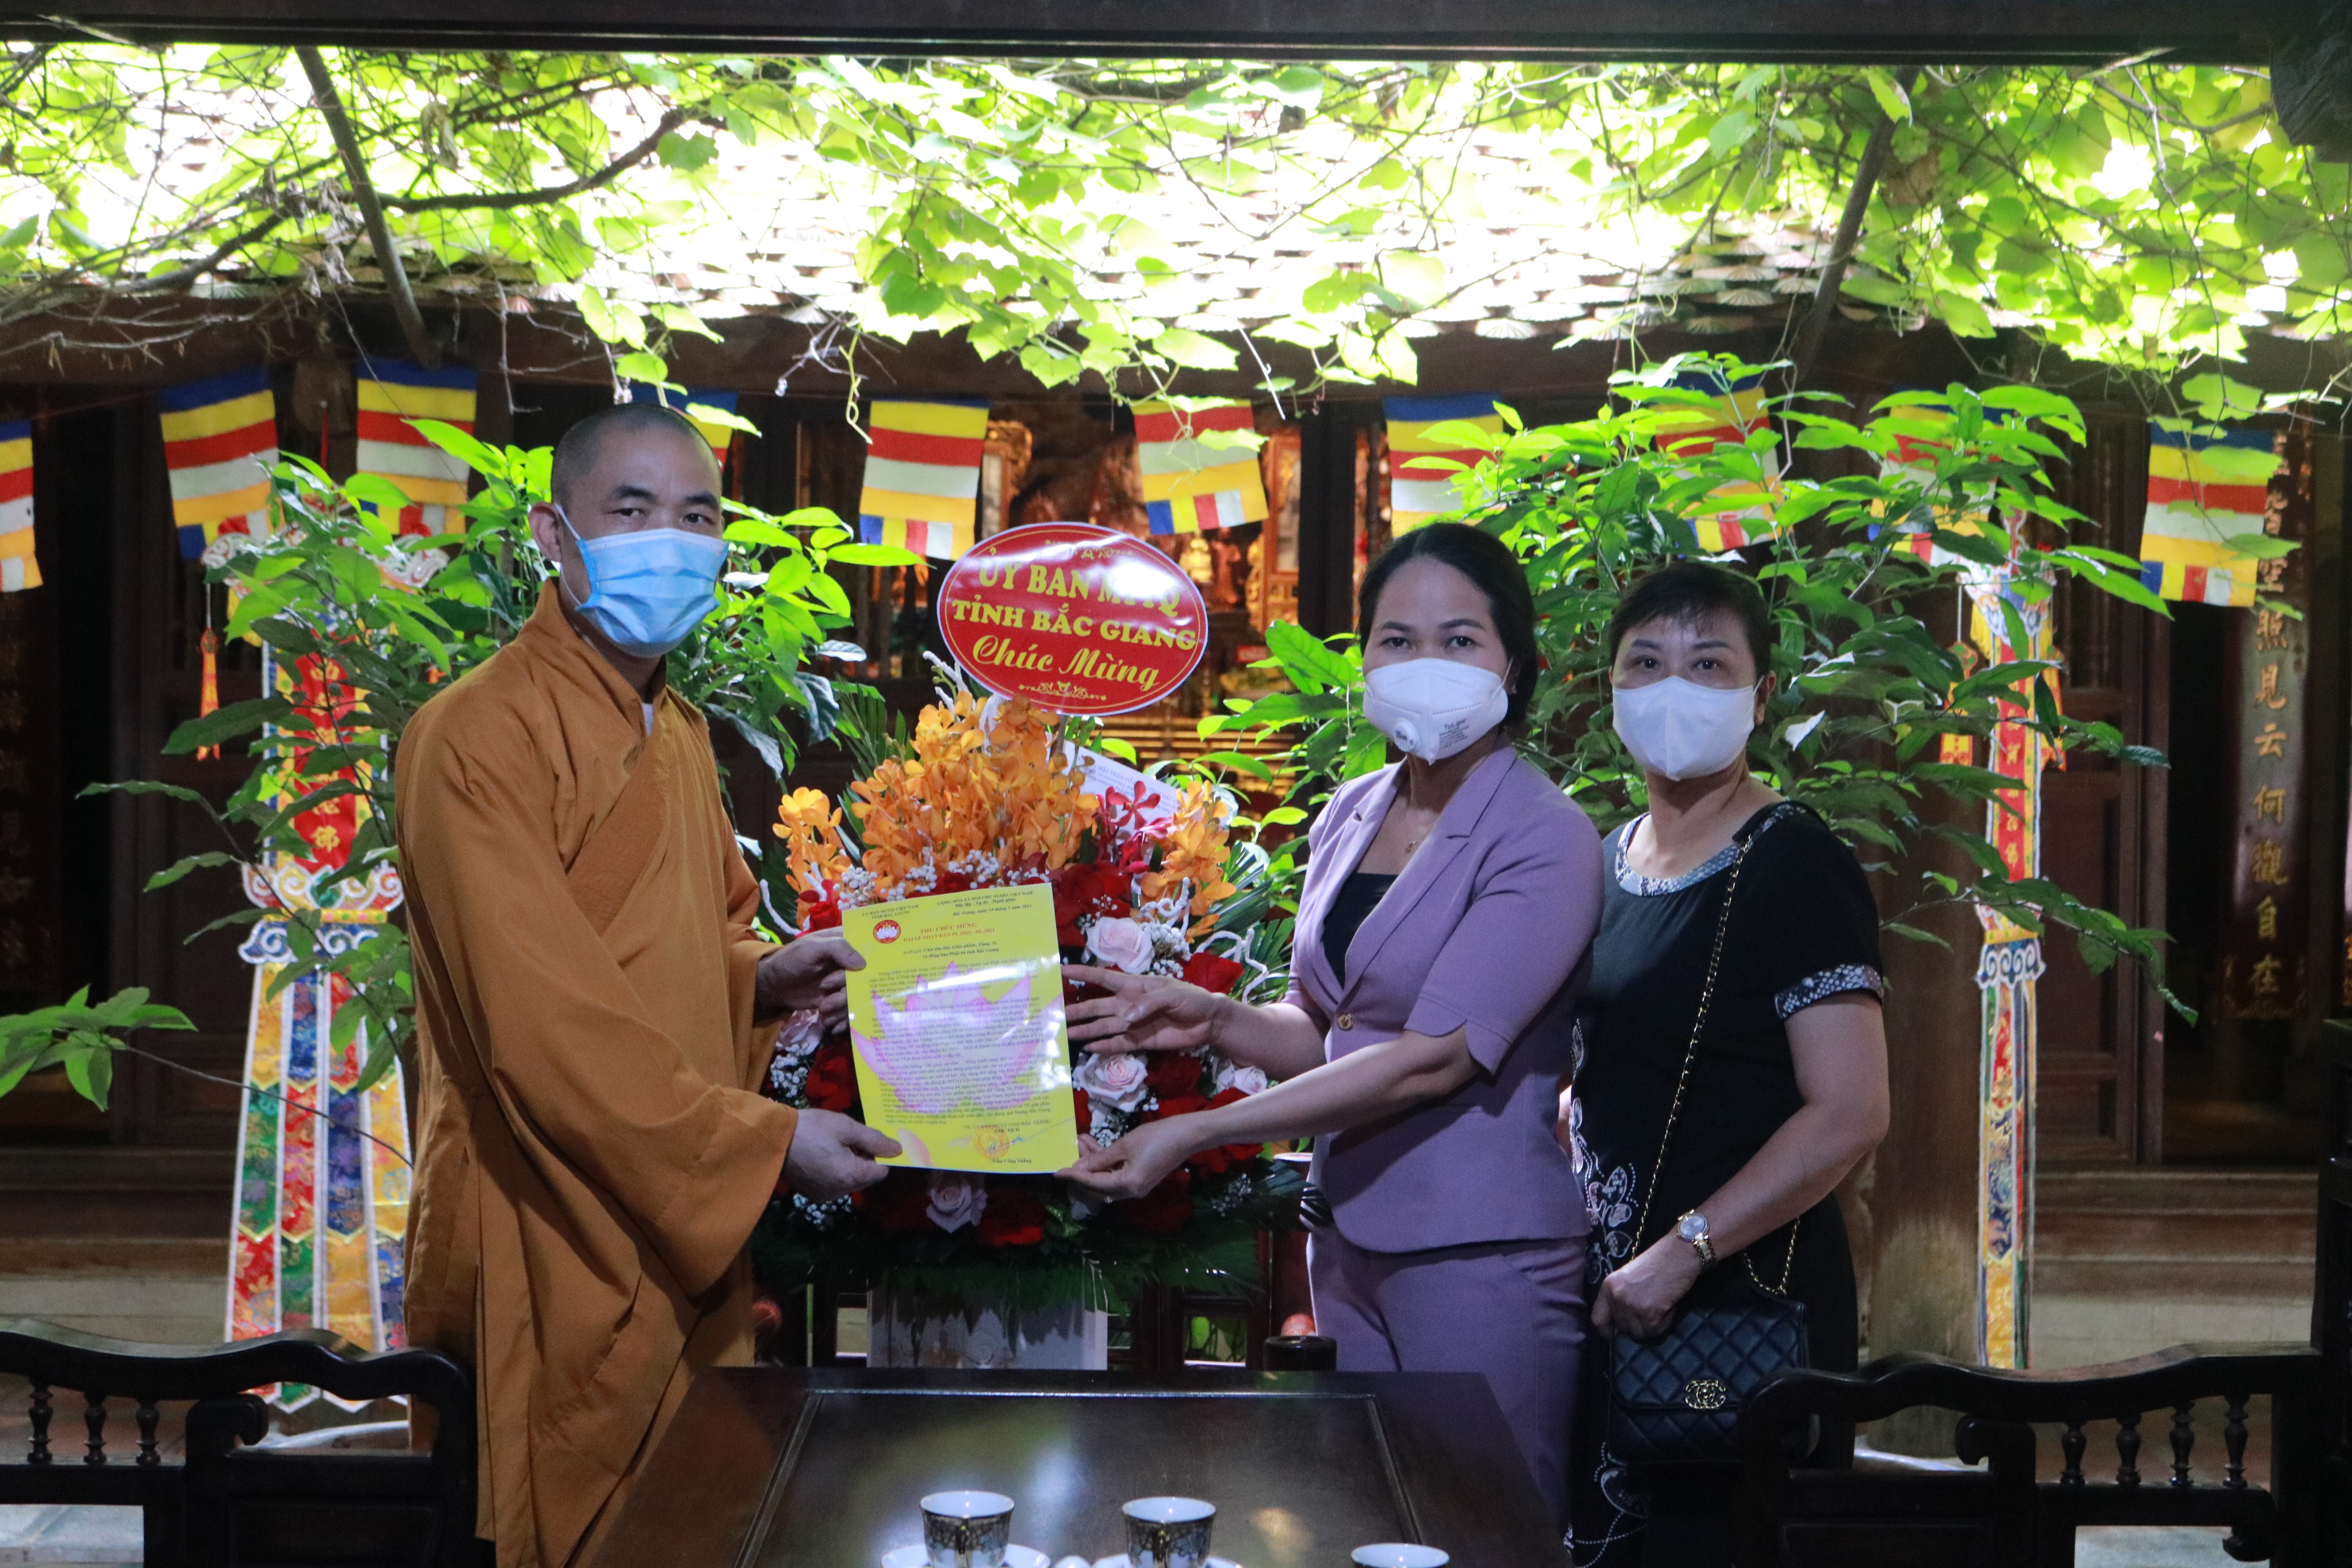 Lãnh đạo Ủy ban MTTQ tỉnh Bắc Giang chúc mừng Đại lễ Phật đản năm 2021 - Phật lịch 2565